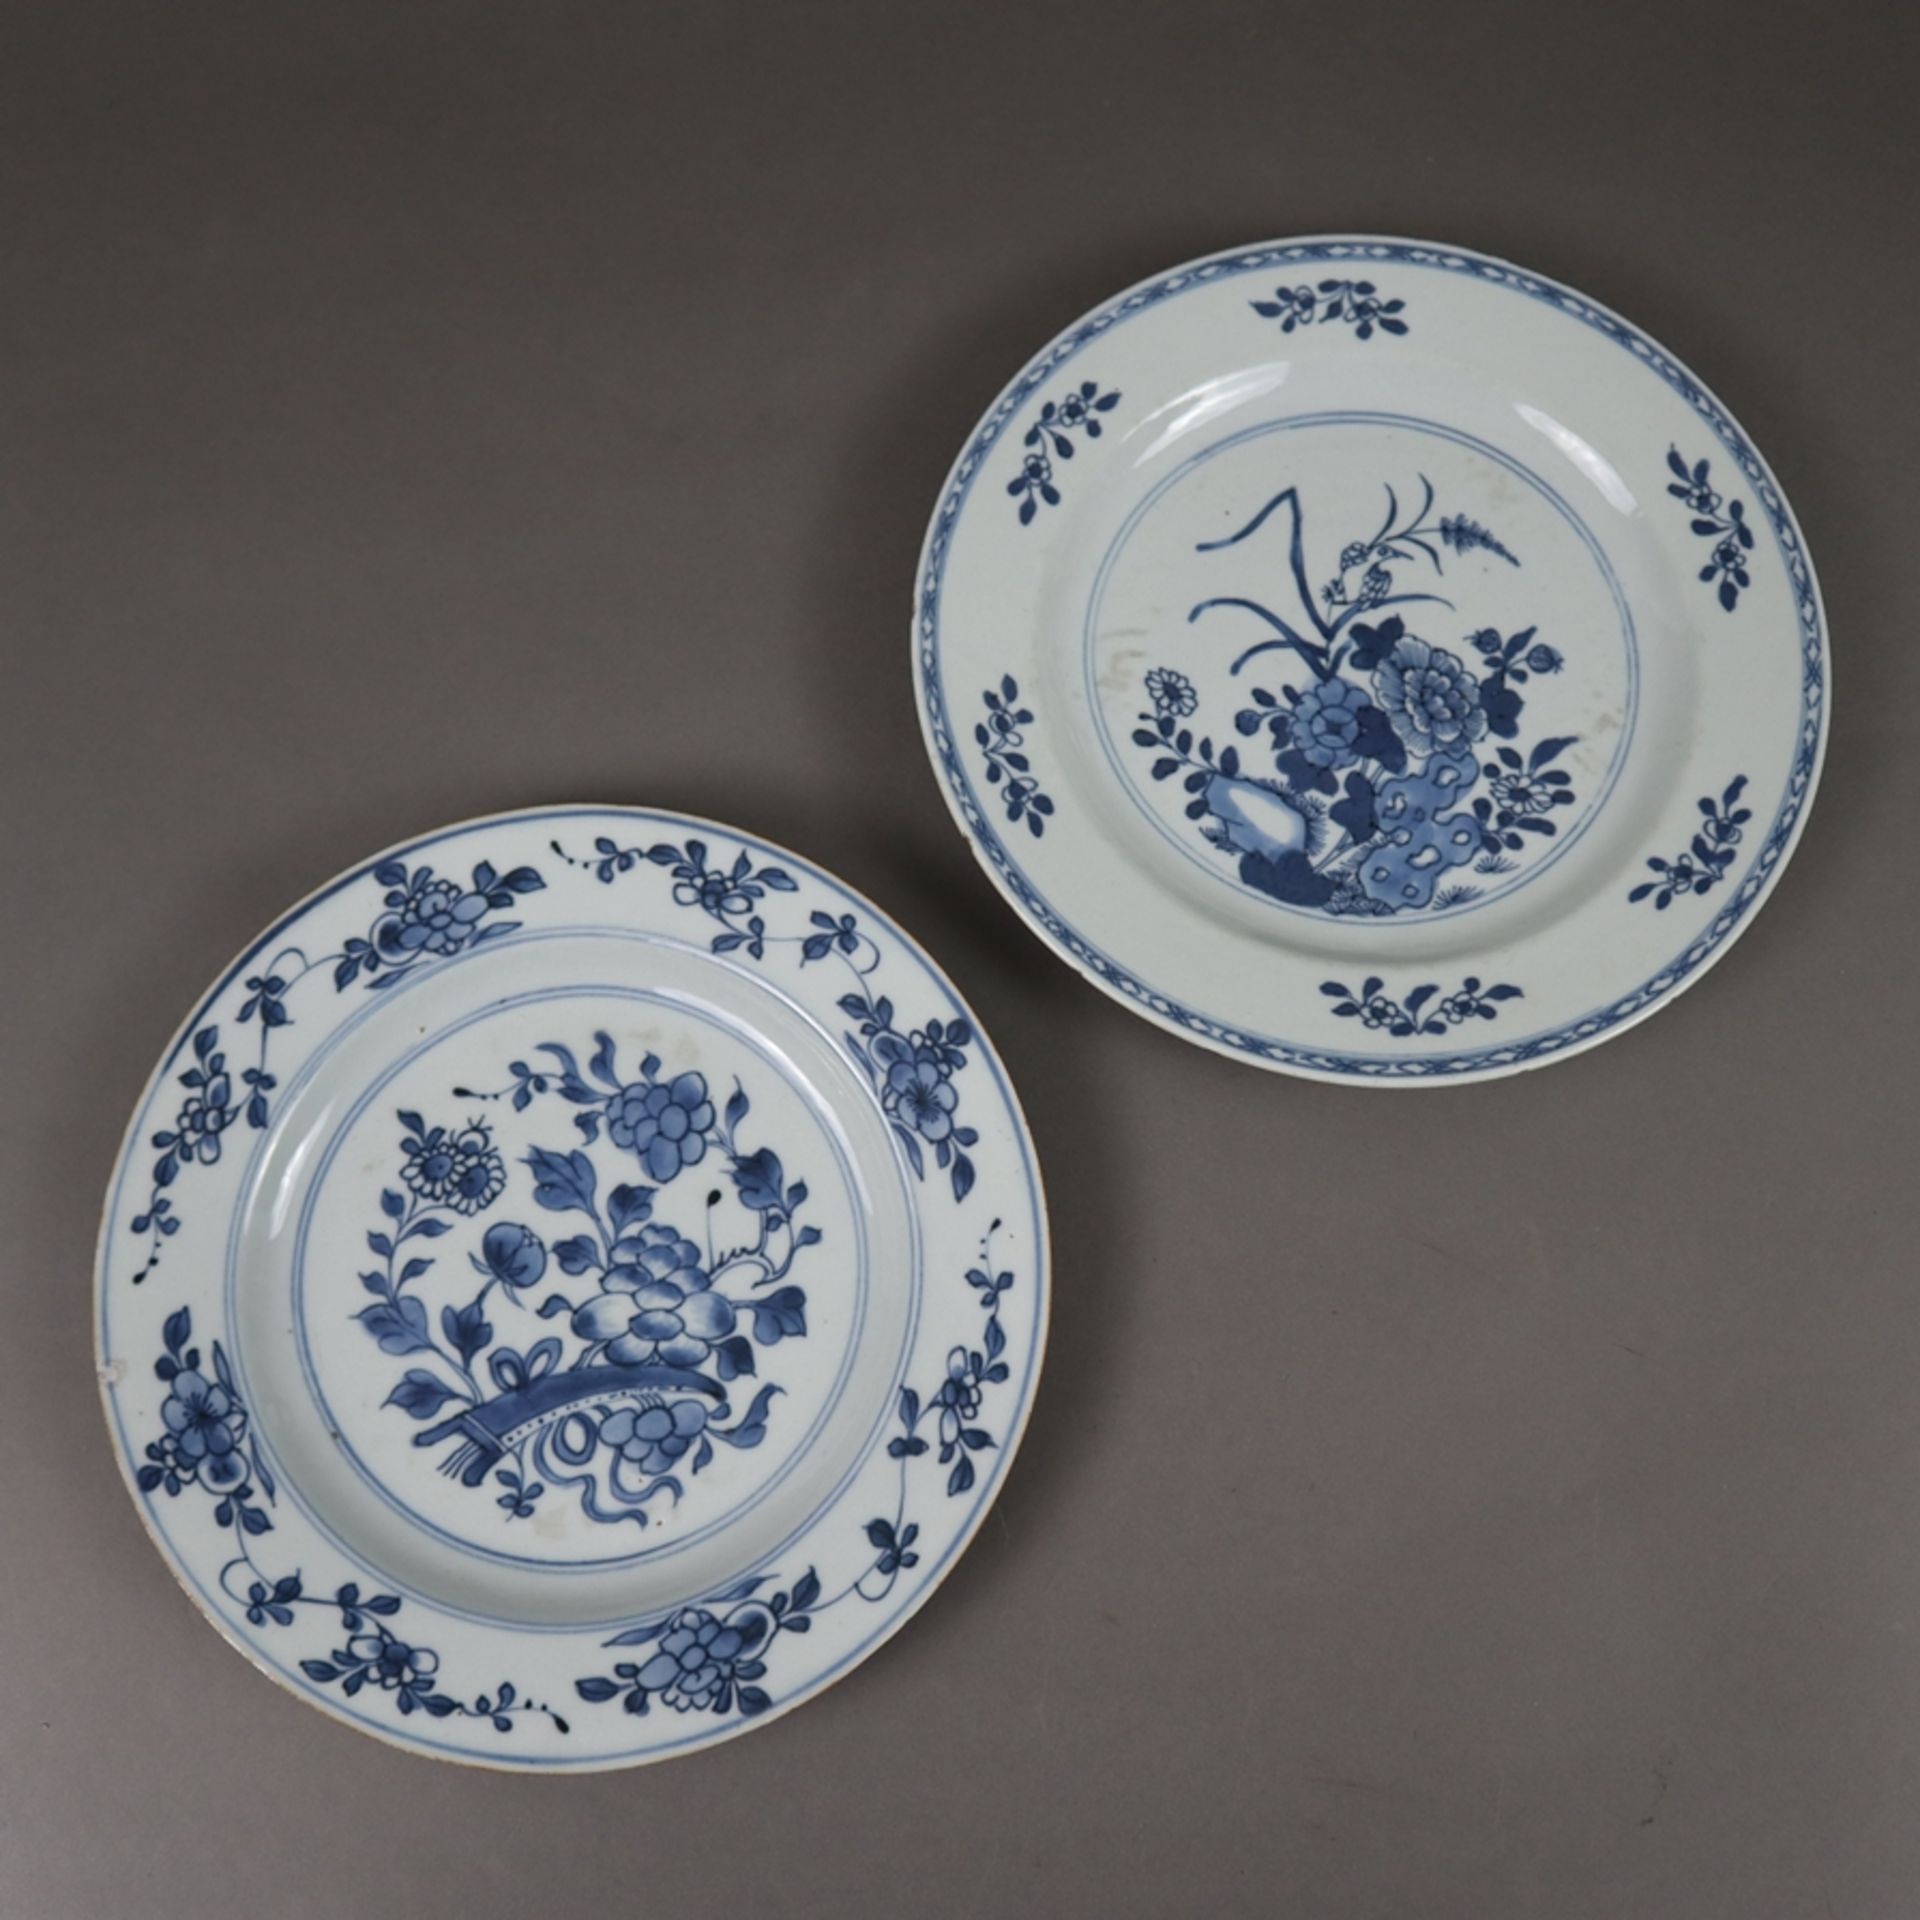 Zwei Teller - China, beide mit floralem Dekor in Unterglasurblau, nicht identisch, Glasurbestoßunge